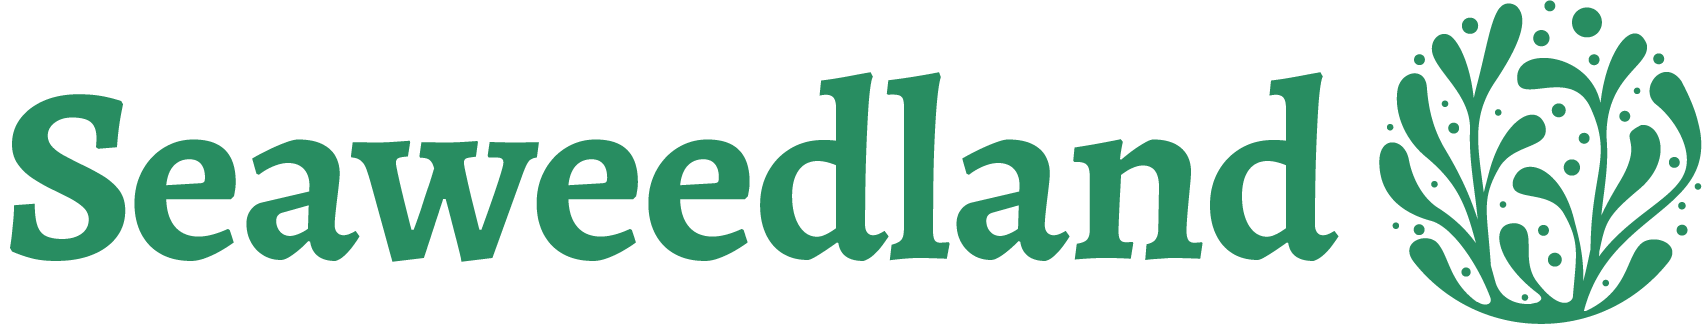 Seaweedland logo